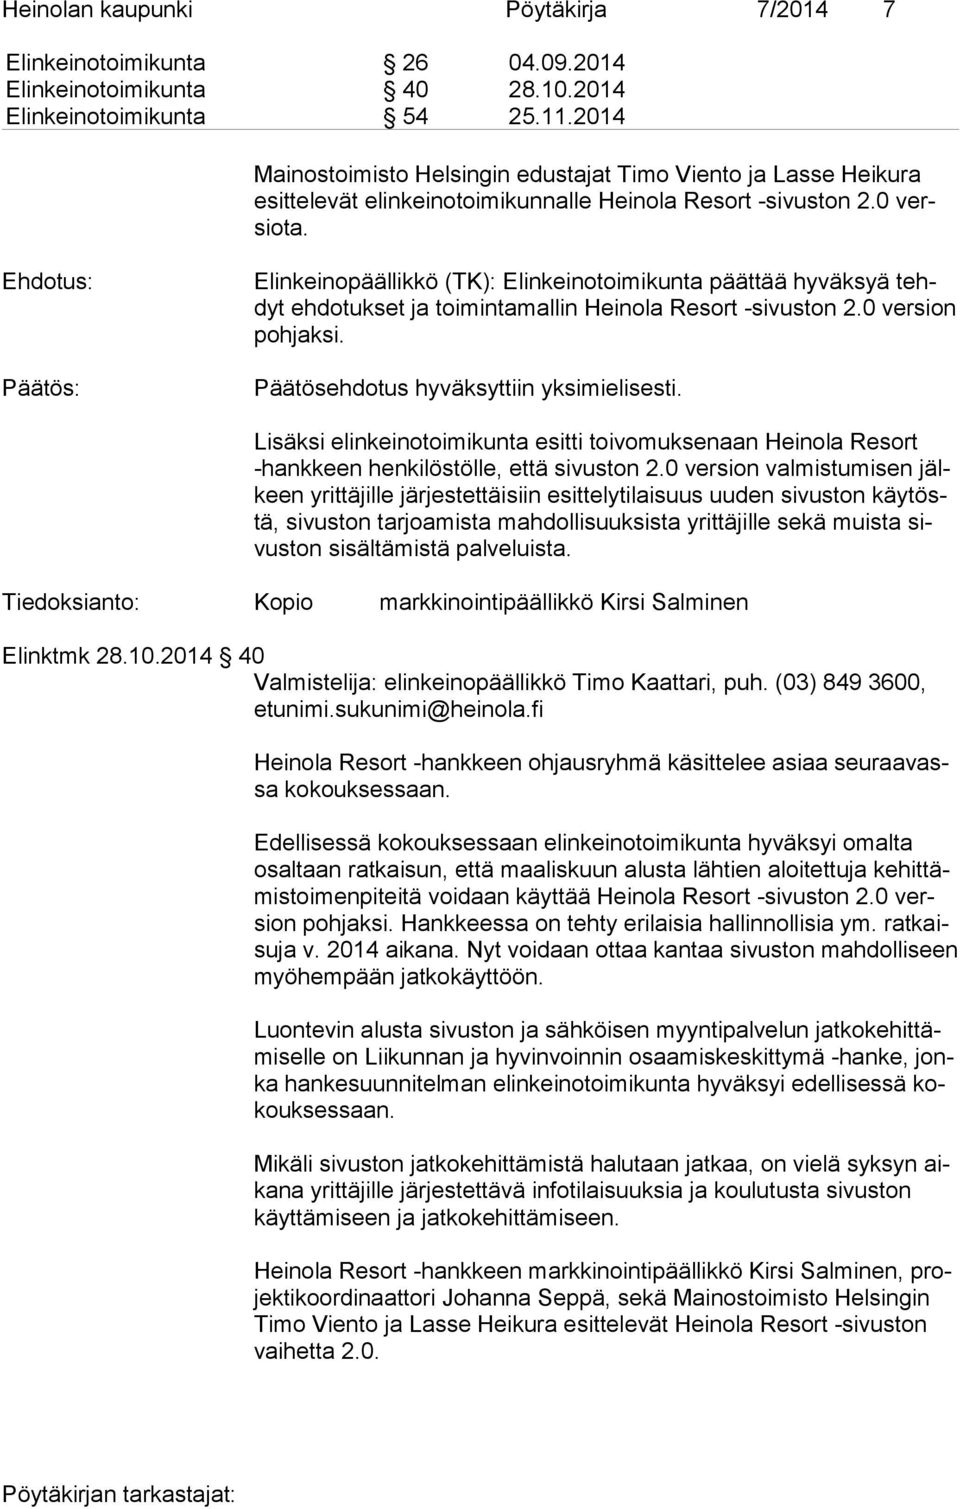 Ehdotus: Päätös: Elinkeinopäällikkö (TK): Elinkeinotoimikunta päättää hyväksyä tehdyt ehdotukset ja toimintamallin Heinola Resort -si vus ton 2.0 version poh jak si.